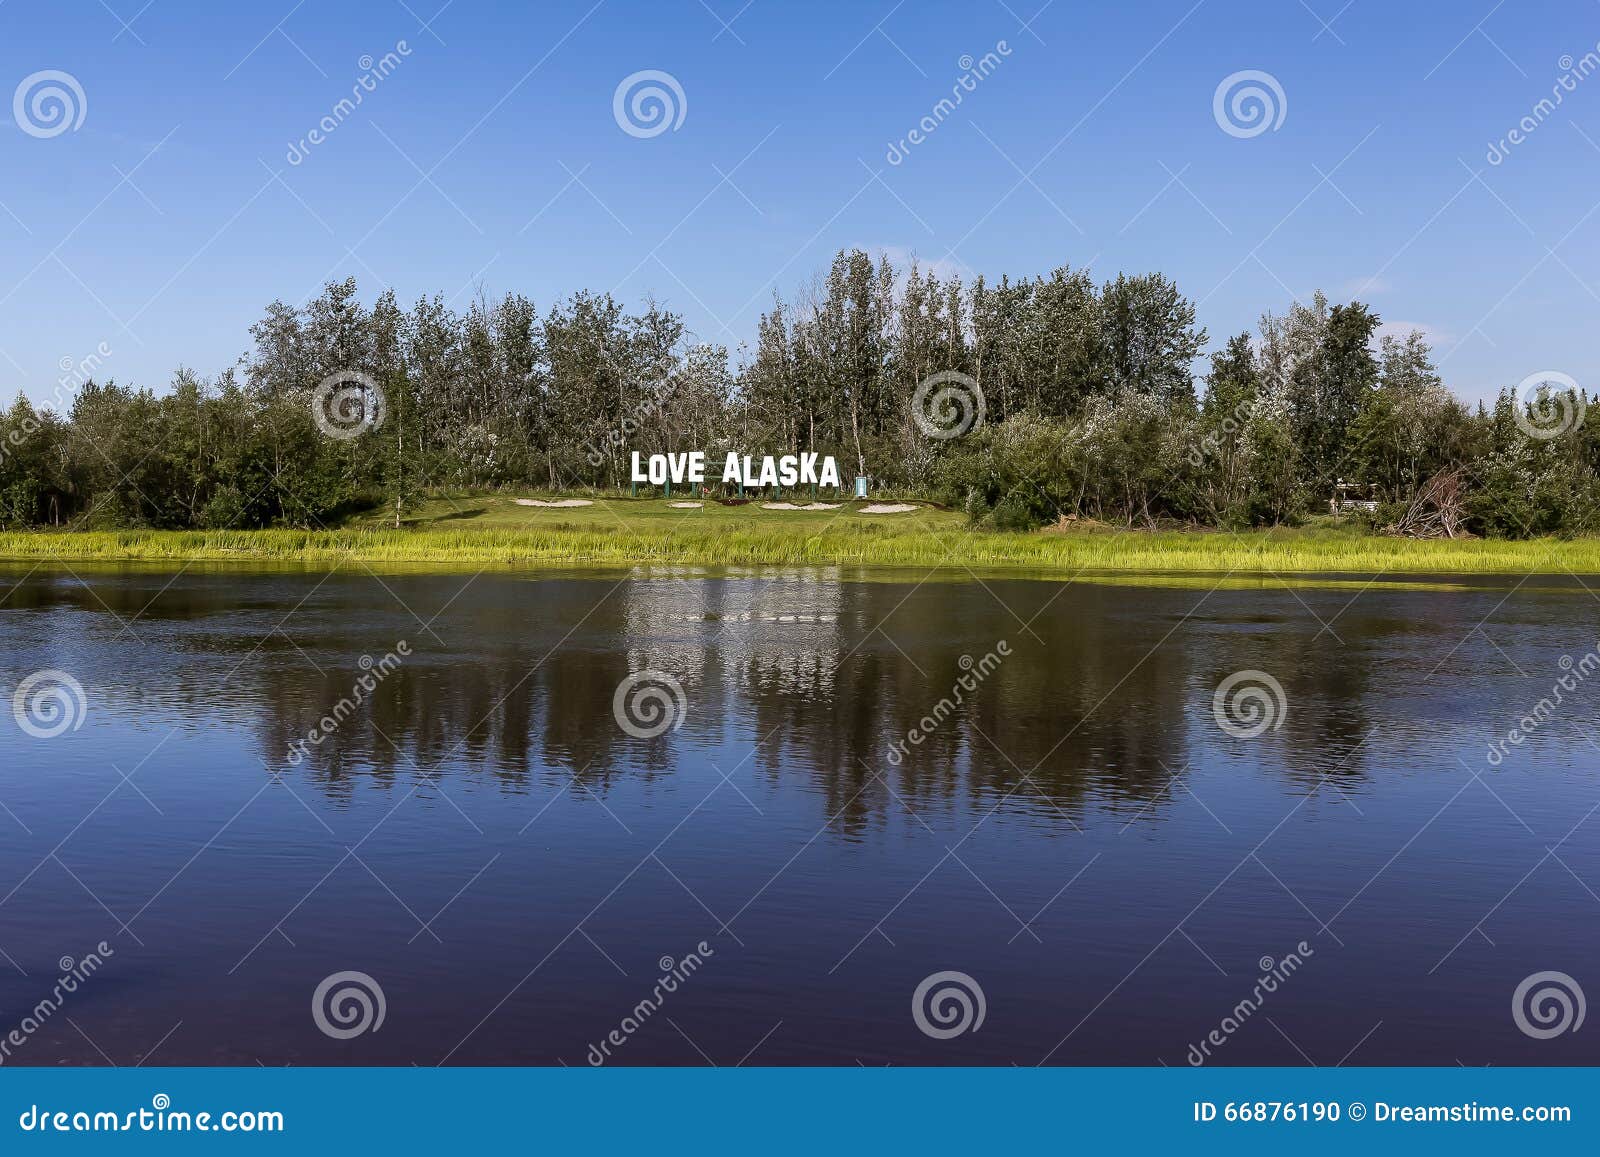 Amor Alaska del letrero I en paisaje. Amor Alaska en paisaje, Fairbanks, Alaska, los E.E.U.U. del letrero I